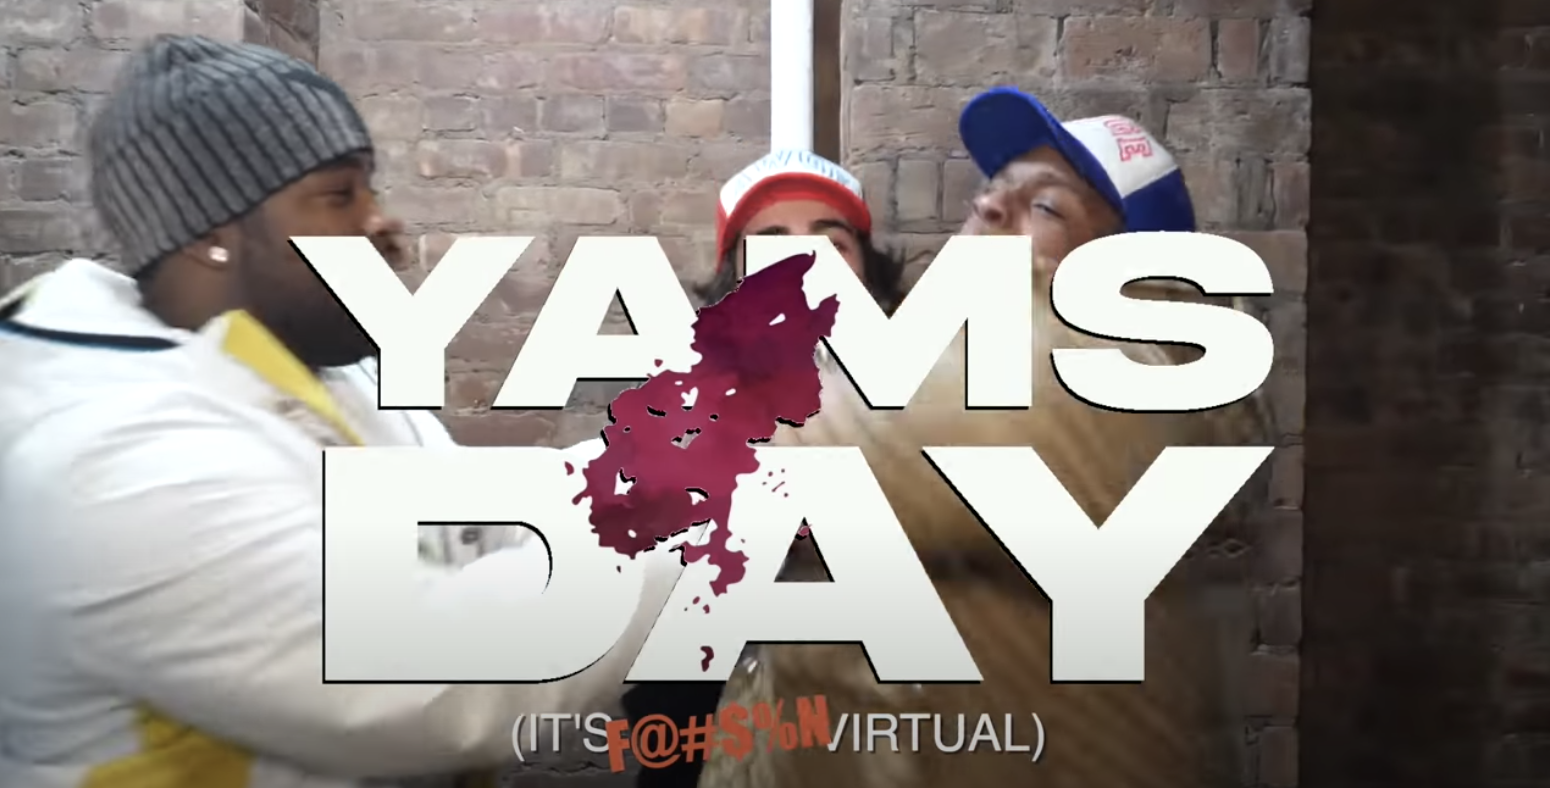 A$AP Mob Take Things Virtual for YAMS DAY 2021